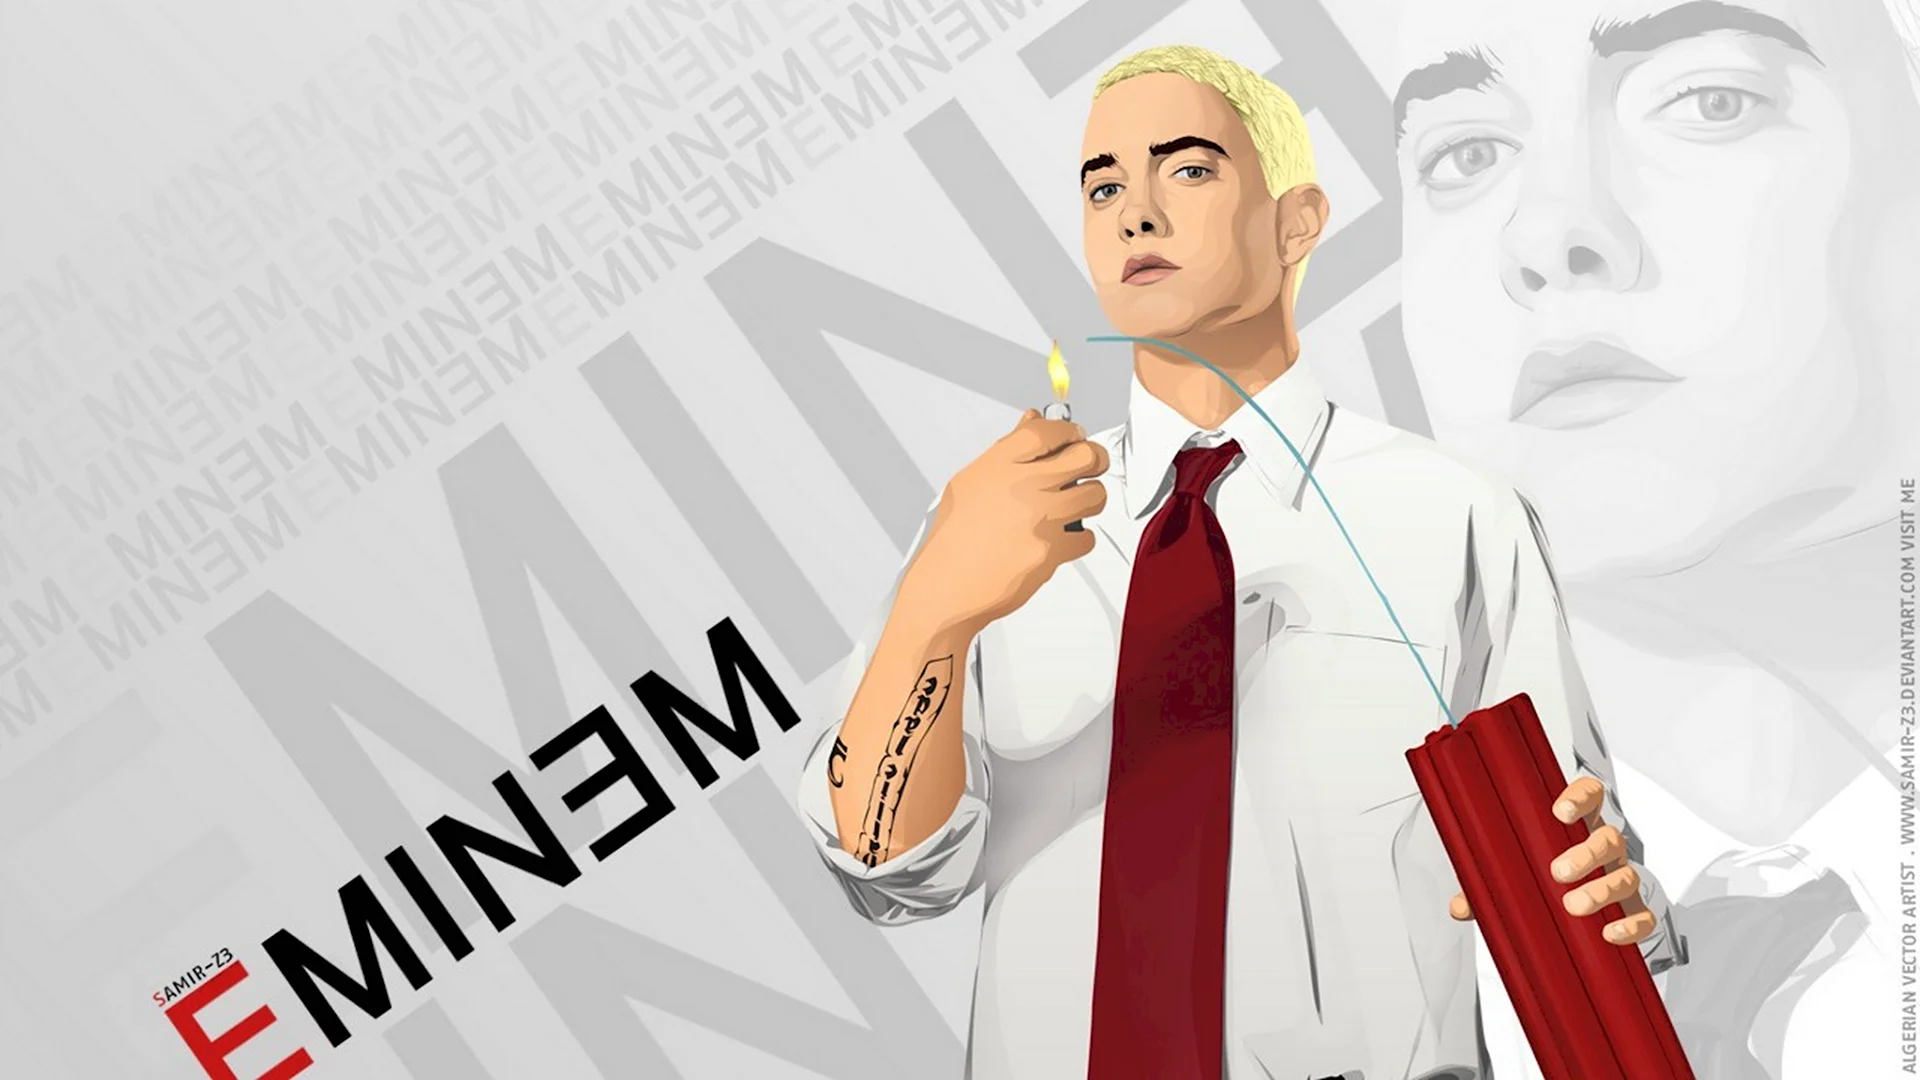 Eminem обои